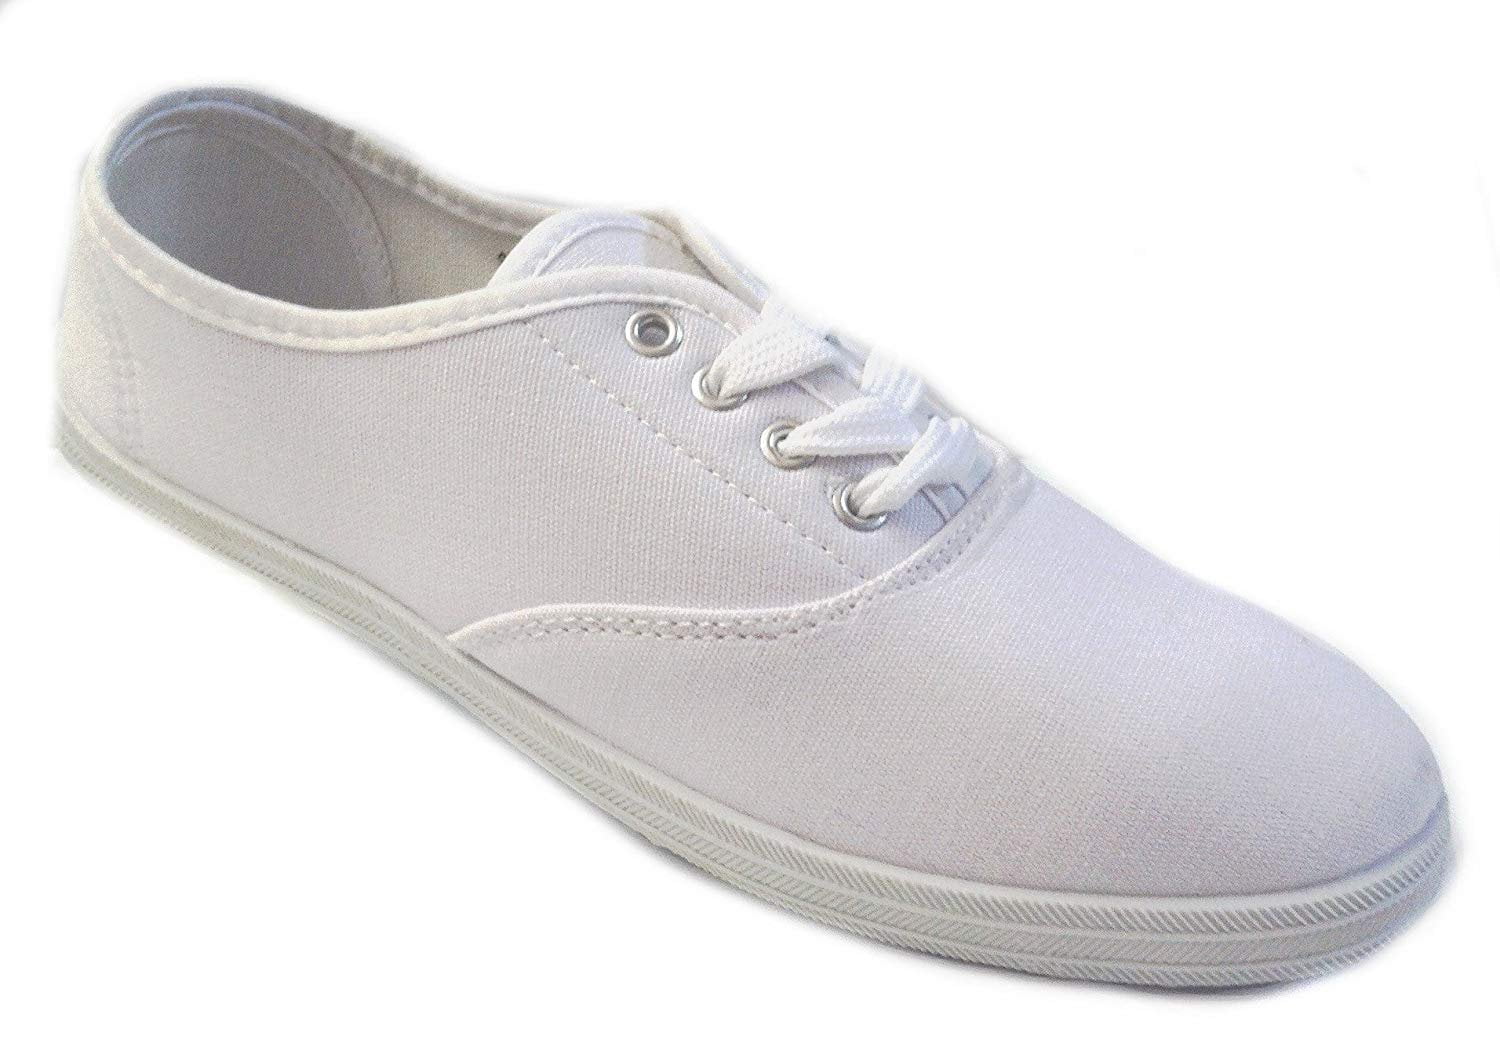 walmart white shoe